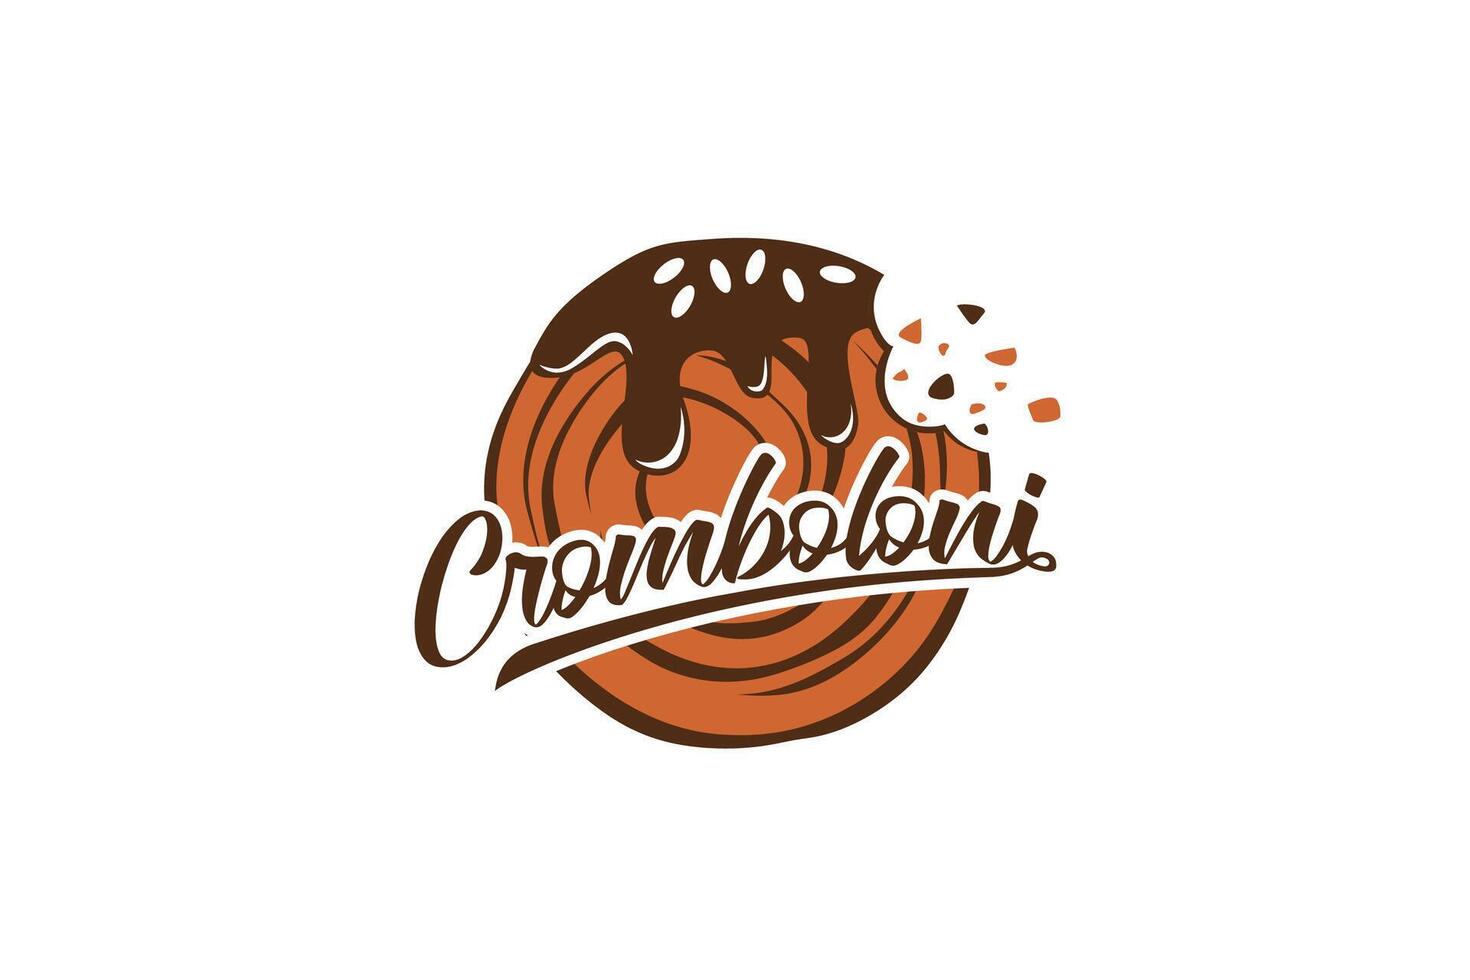 cromboloni logo met een combinatie van gebeten cromboloni en mooi belettering voor bakkerij winkels, cafés, restaurants, enz. vector